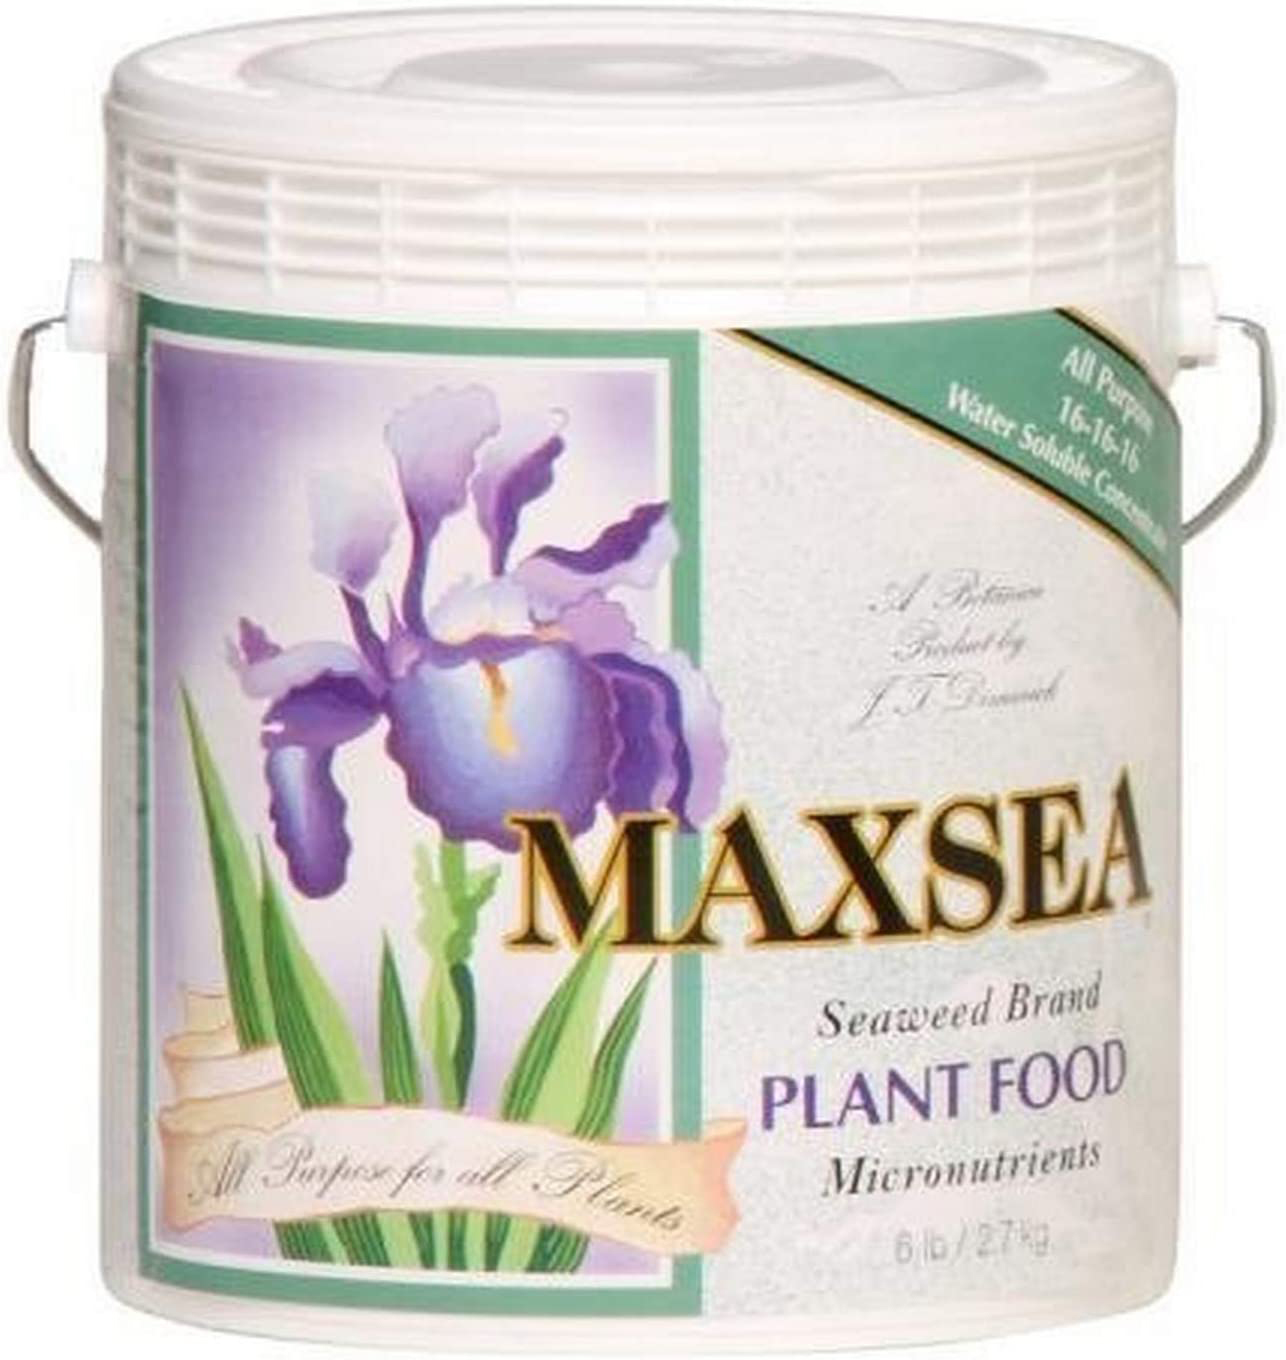 MAXSEA plant fodd at LeBallister